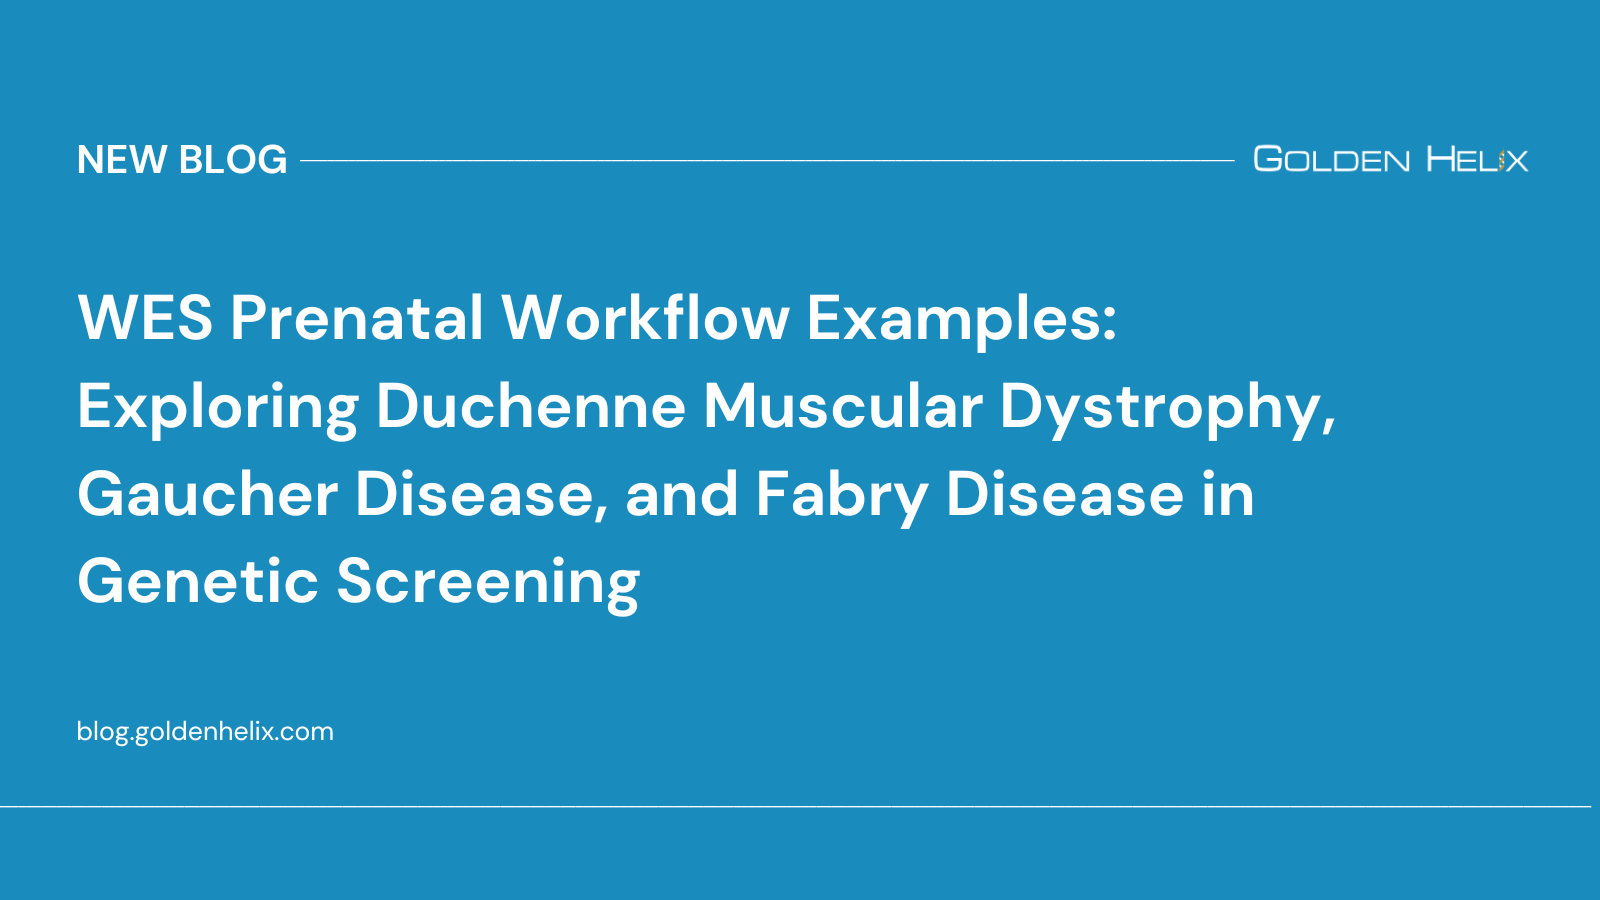 WES Prenatal Workflow Examples: Exploring Duchenne Muscular Dystrophy, Gaucher Disease, and Fabry Disease in Genetic Screening